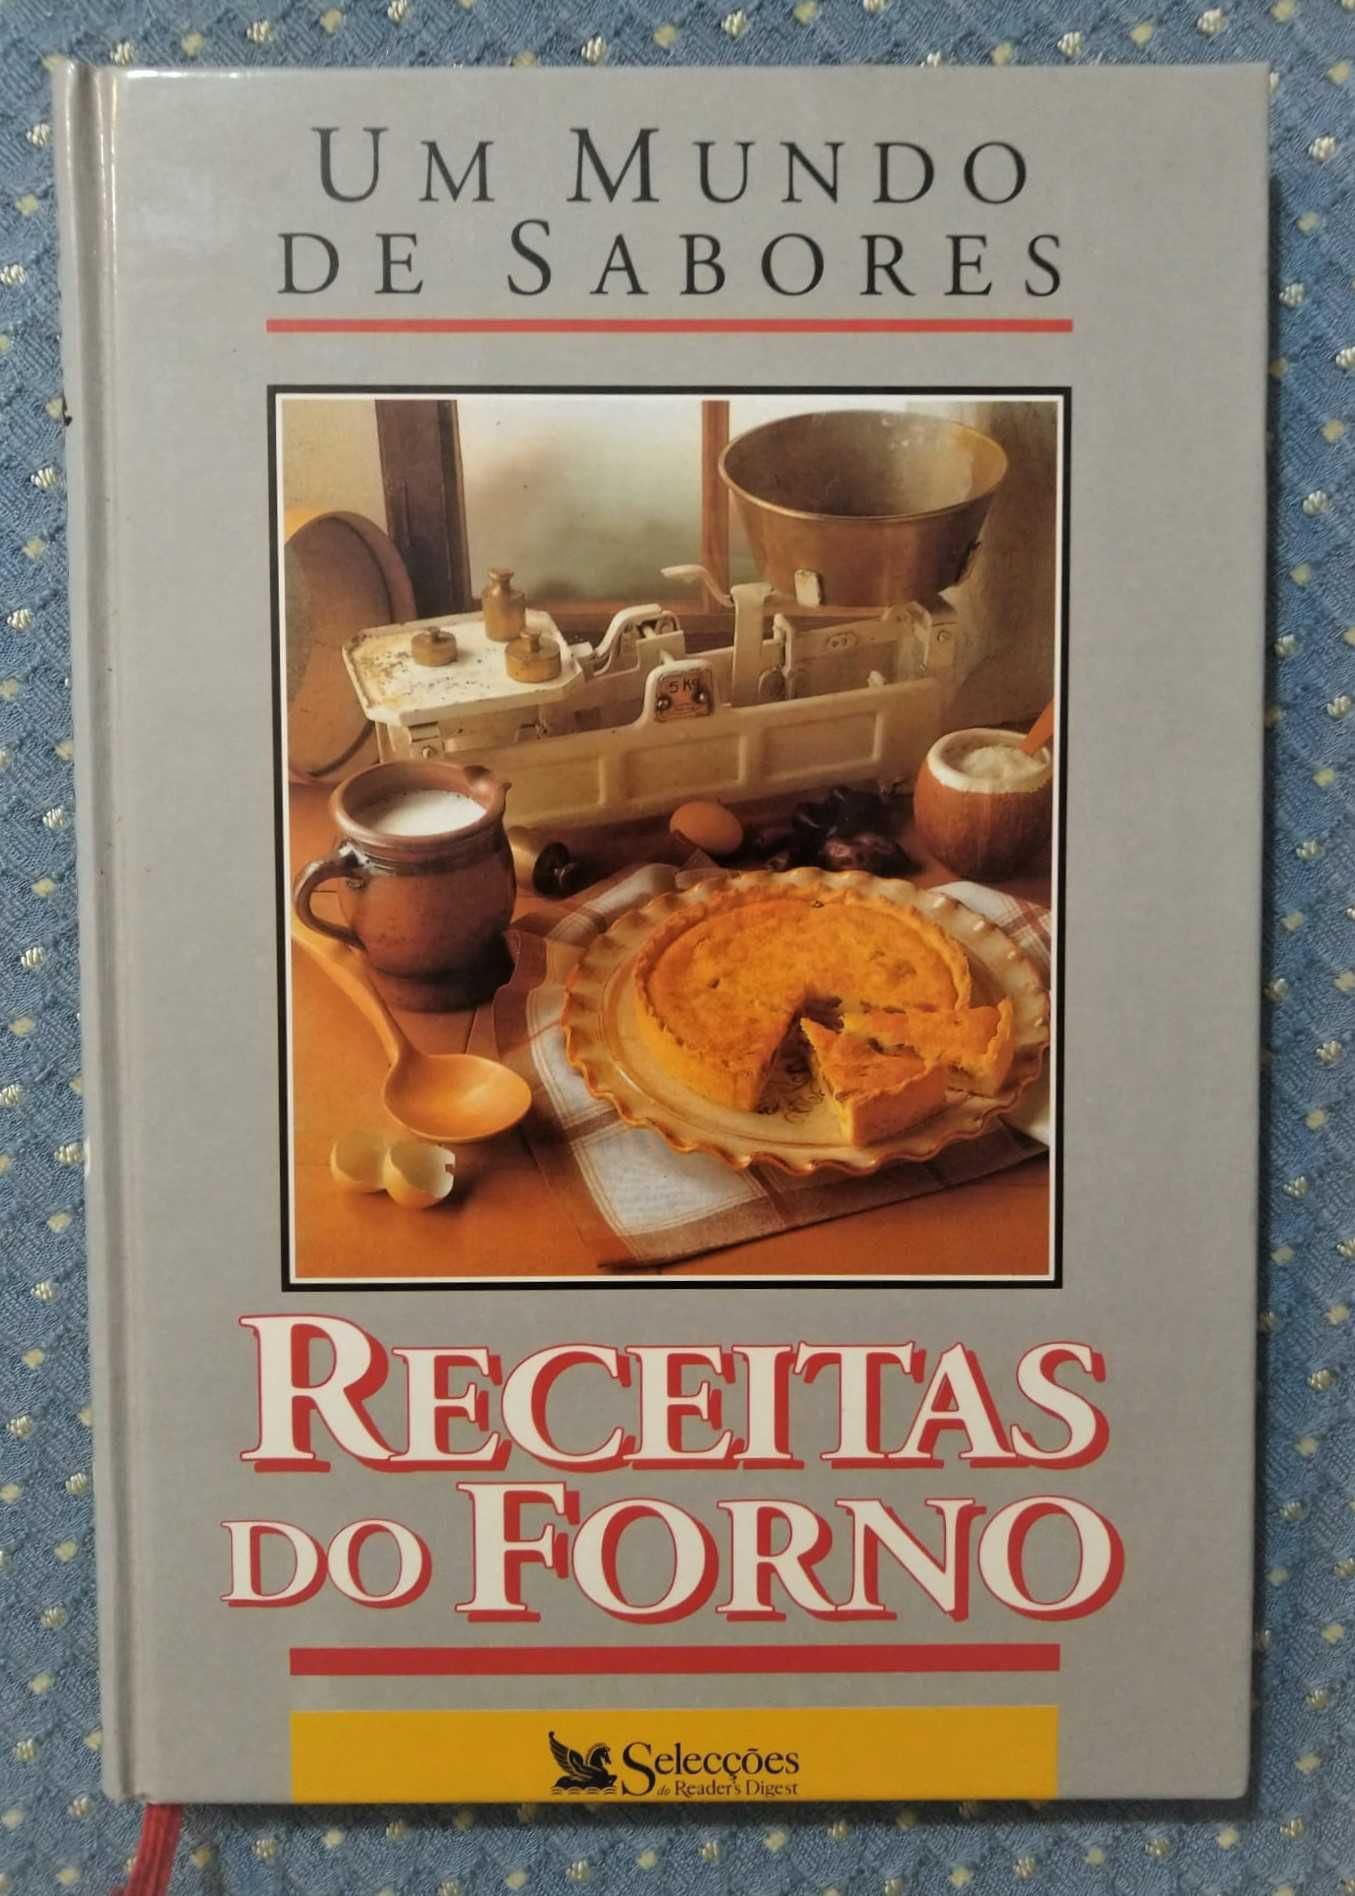 Livro "Receitas do Forno" Coleção Um Mundo de Sabores - Como NOVO!